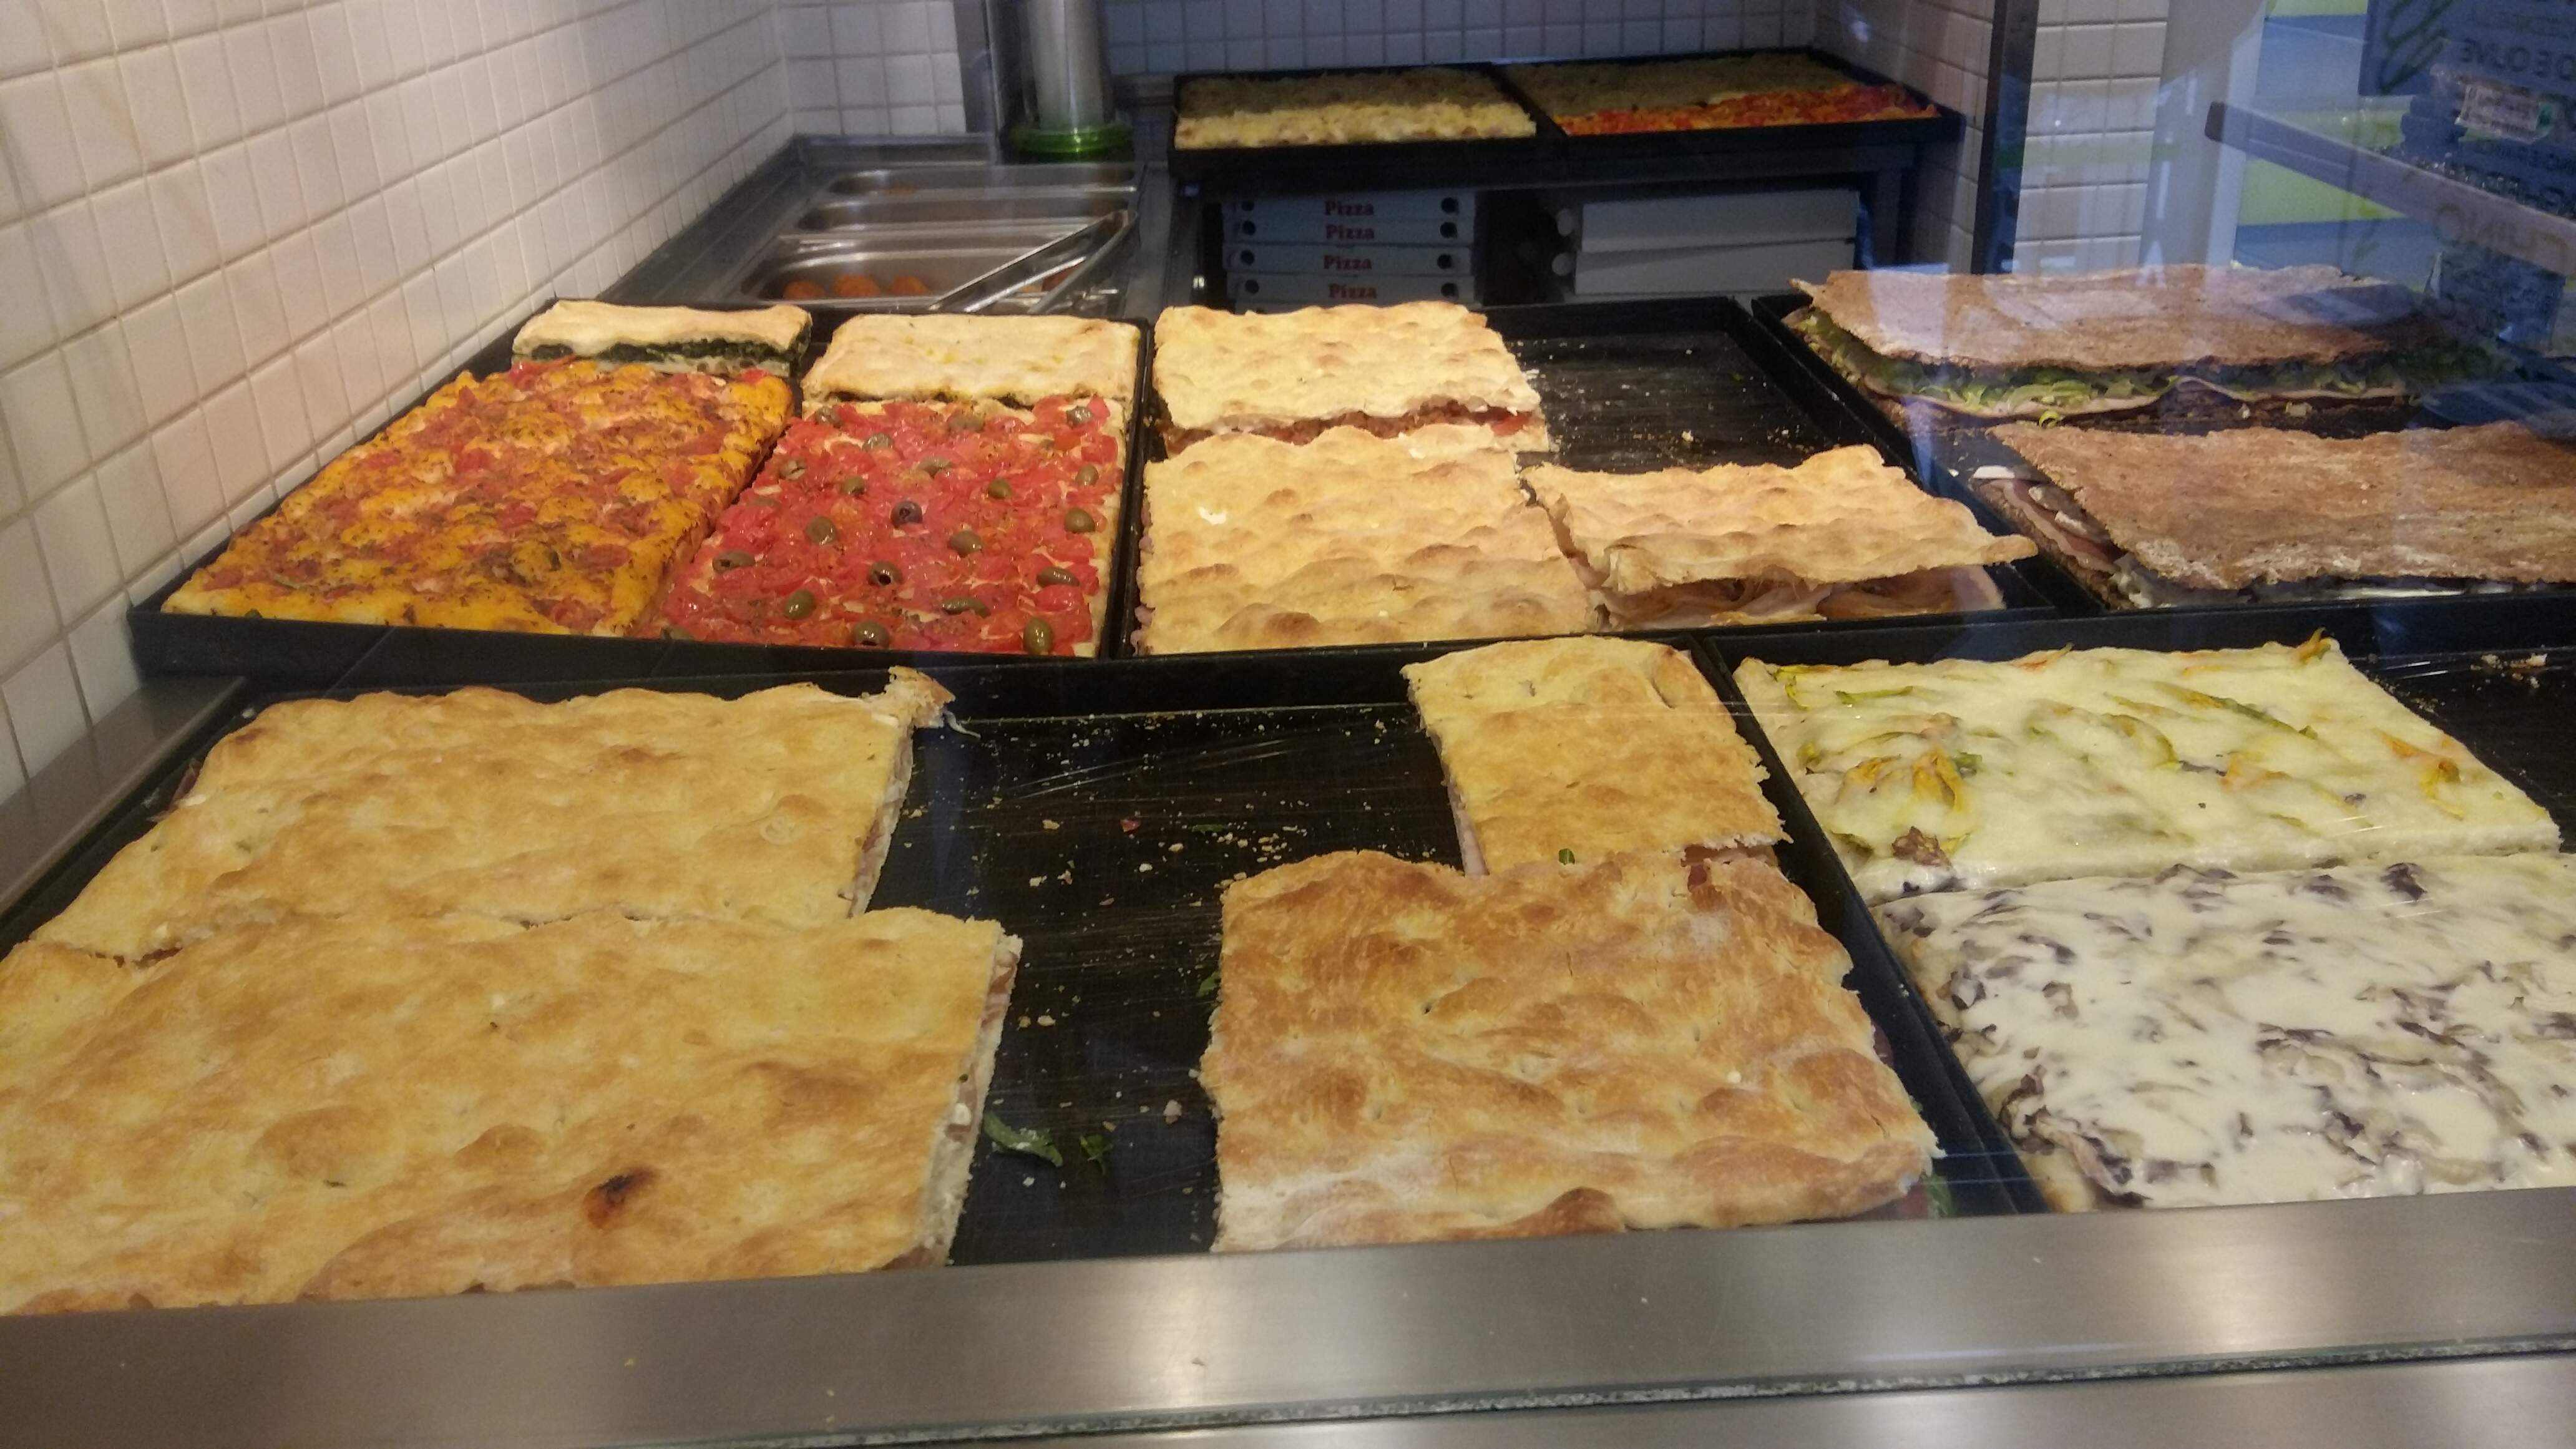 od lewej w glebi: focaggia foggiana, pizza z pomidorami i oliwkami, rozne pizze faszerowane